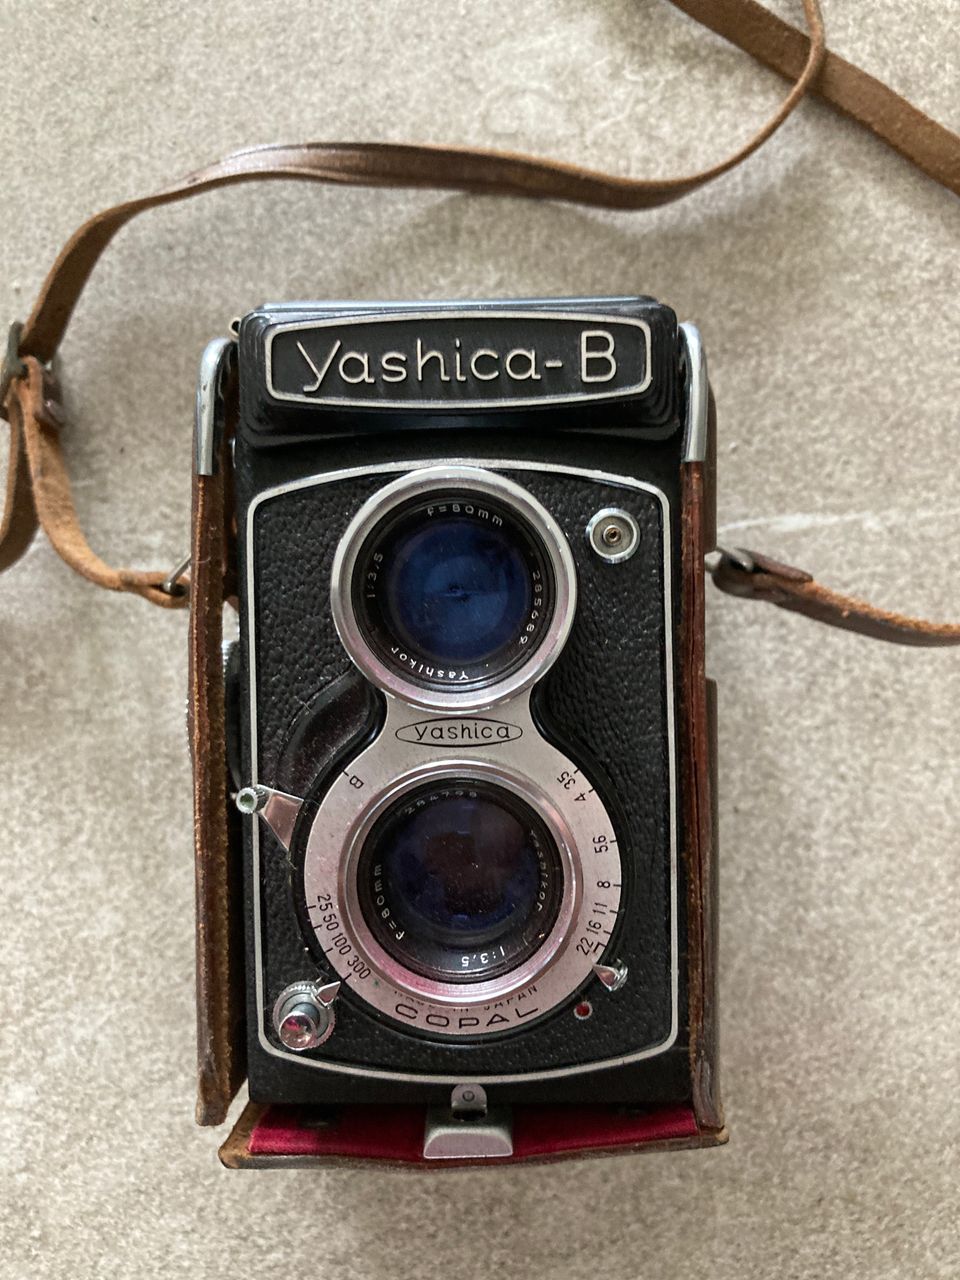 Yashica-B